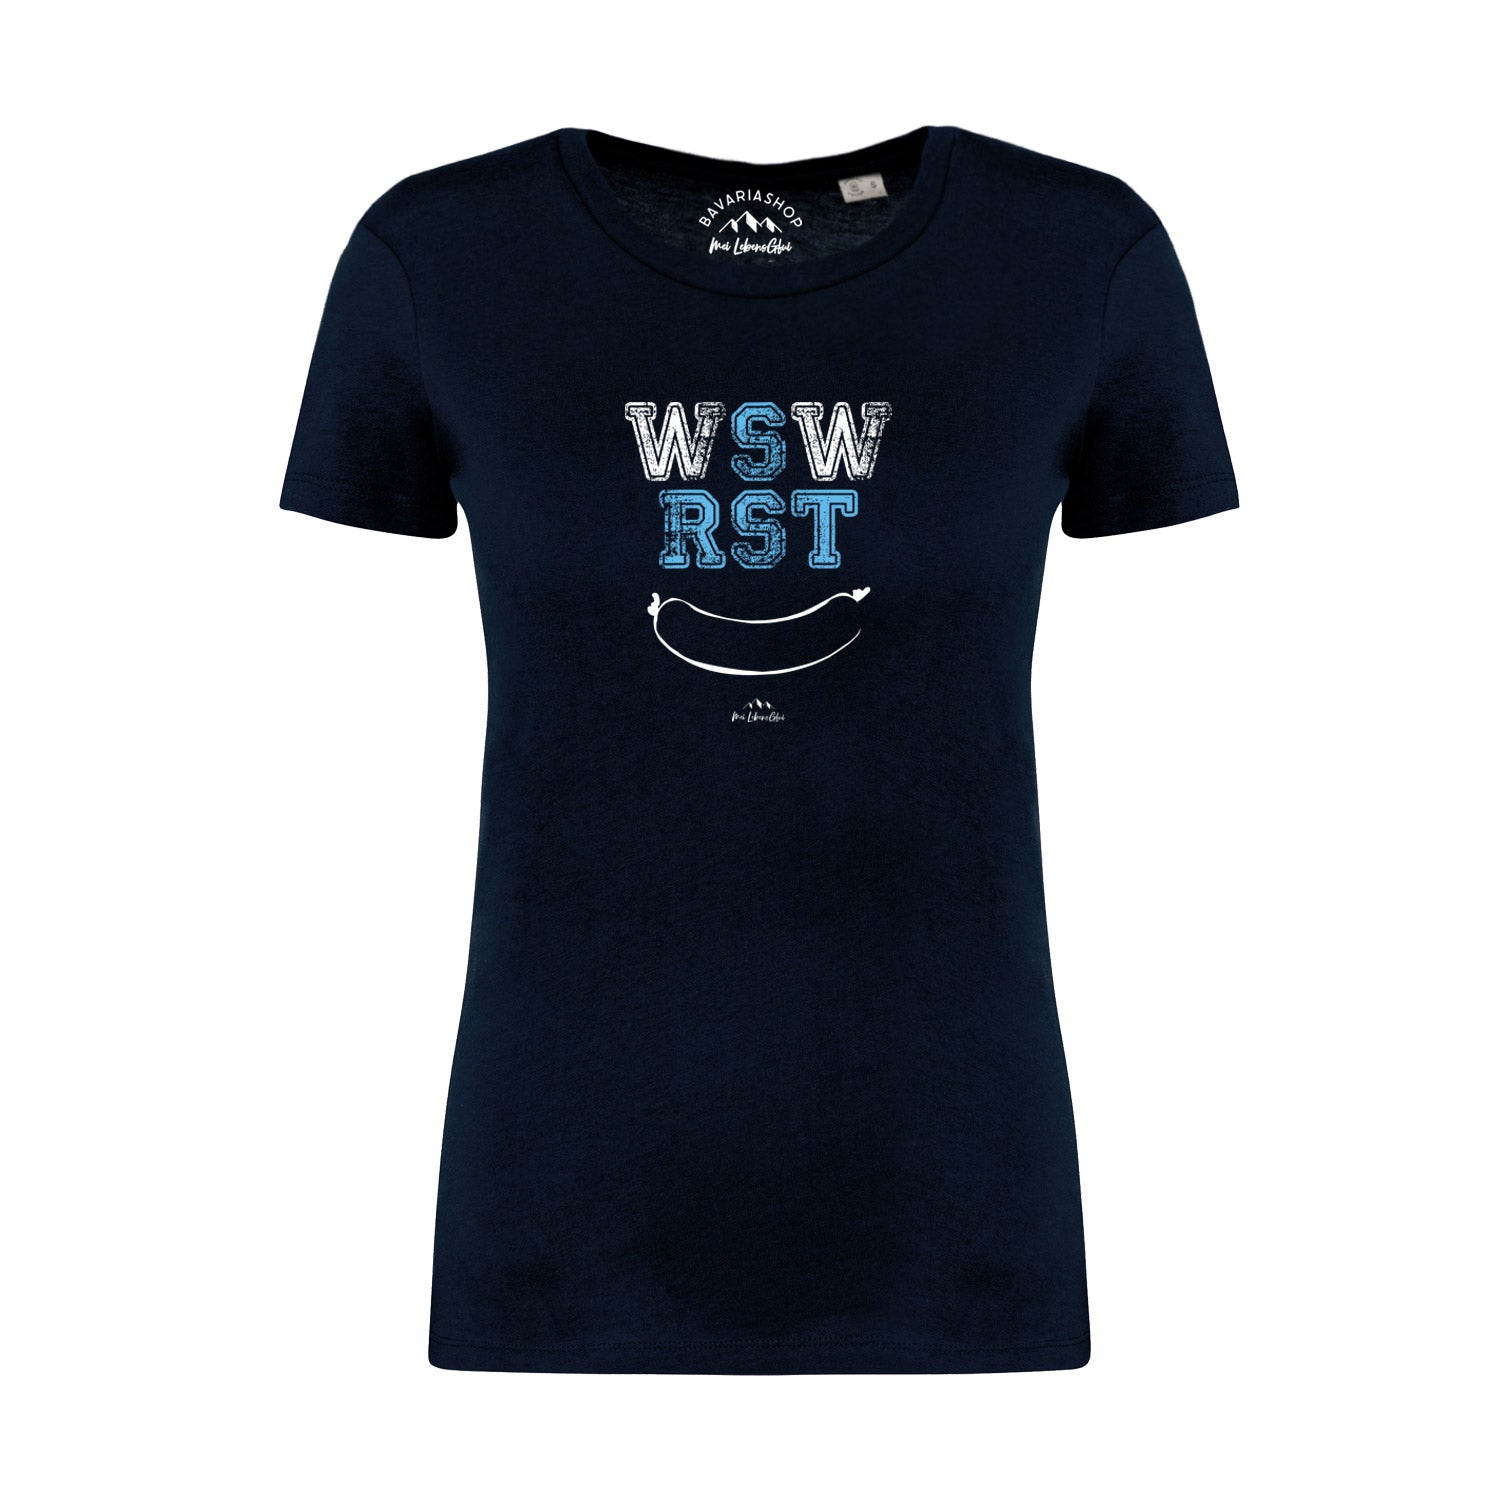 Damen T-Shirt "WSWRST"